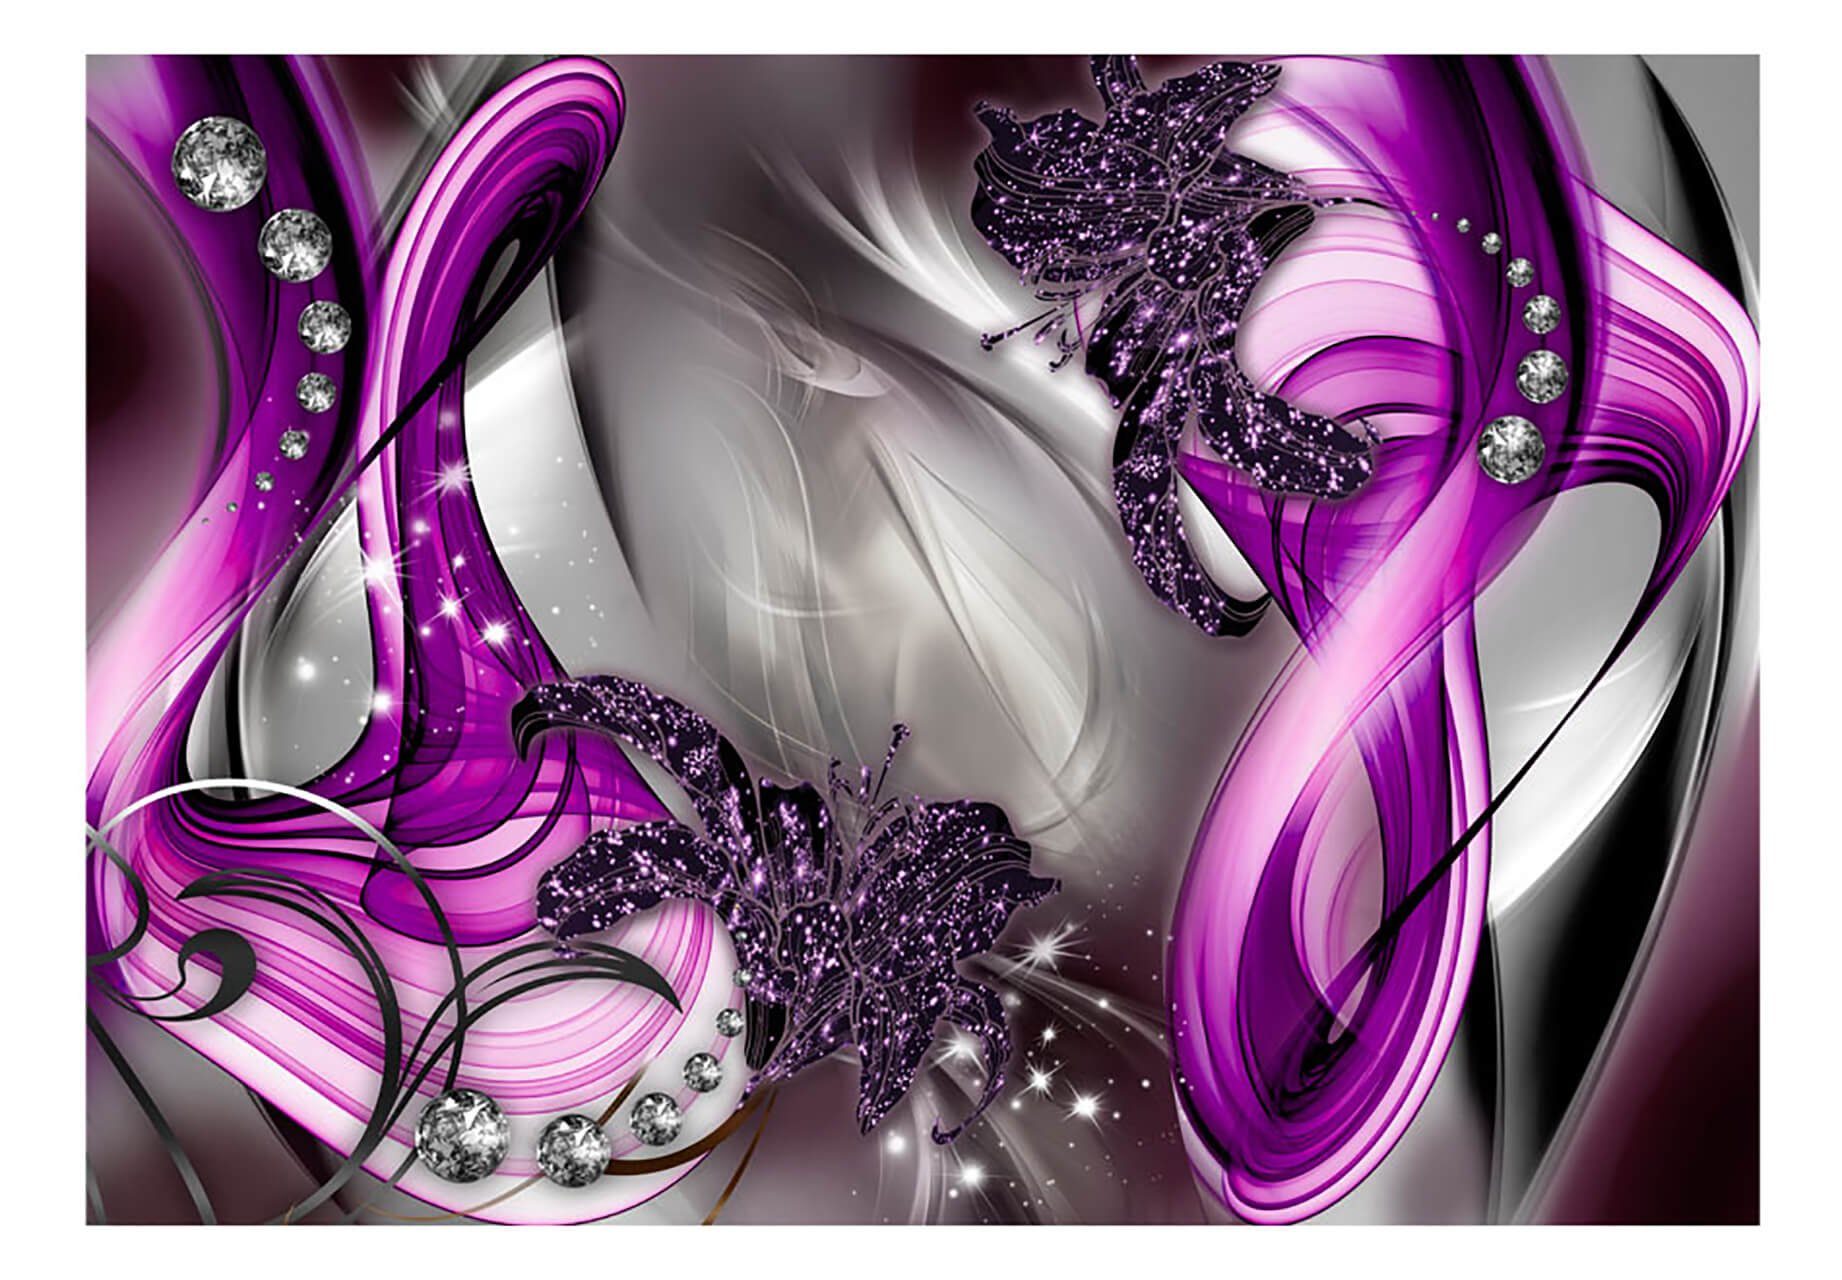 KUNSTLOFT Vliestapete Purple Splendour 3.92x2.8 m, matt, lichtbeständige Design Tapete